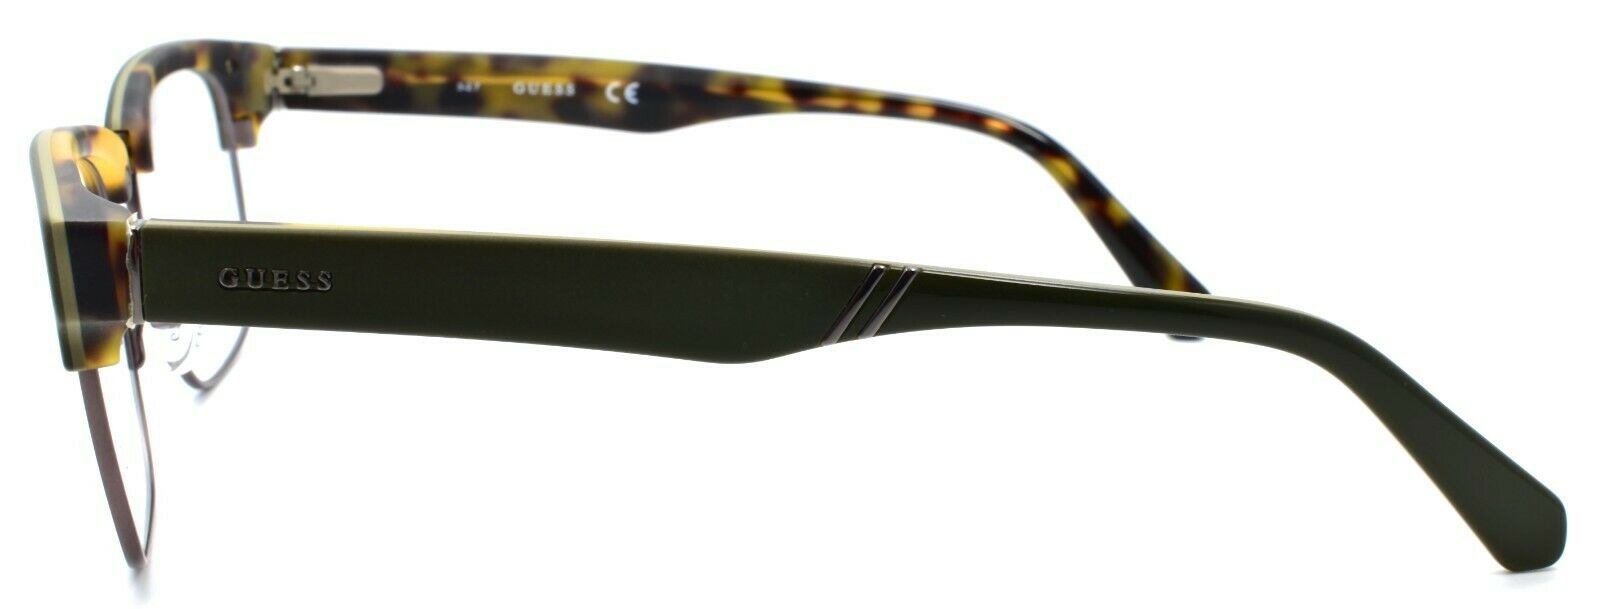 3-GUESS GU1942 097 Men's Eyeglasses Frames 51-19-145 Matte Dark Green-664689919895-IKSpecs